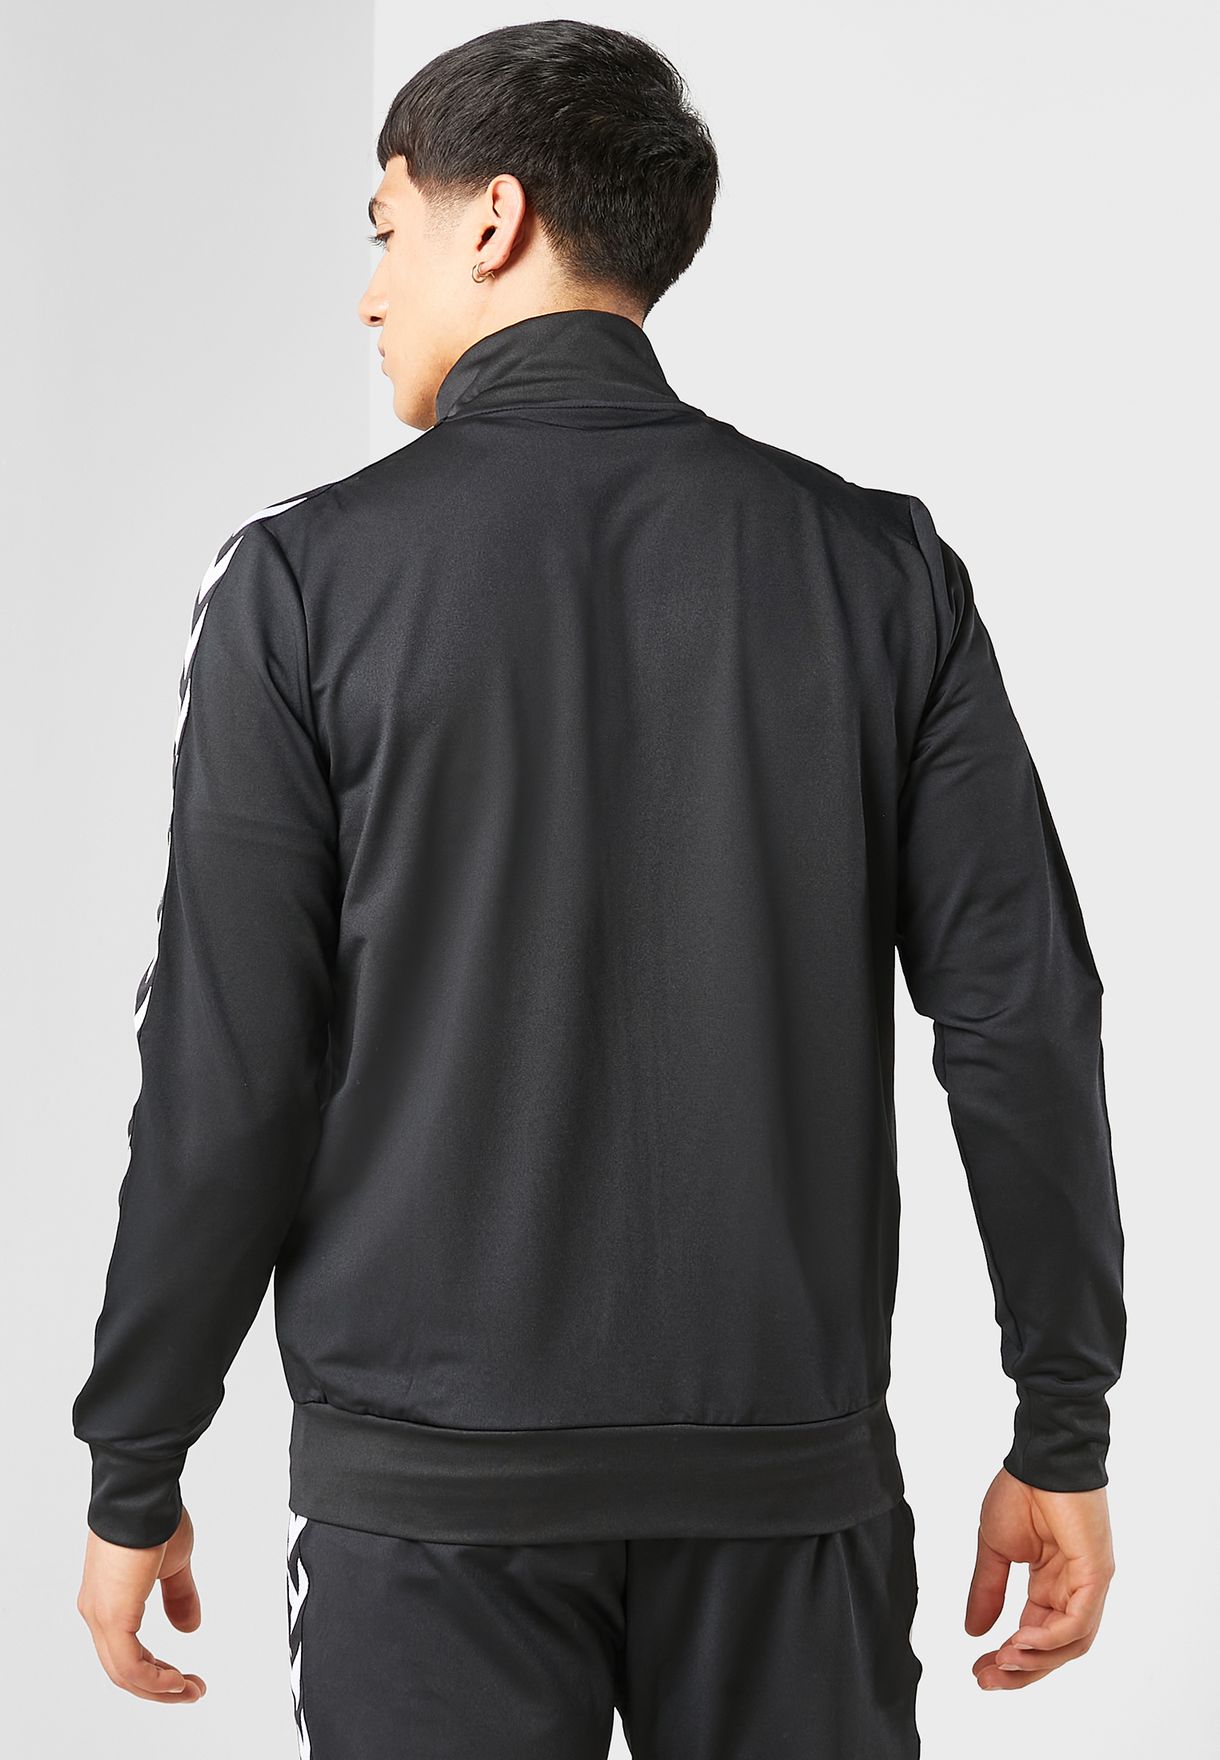 Hummel black 2.0 Zip Jacket for Men MENA, Worldwide